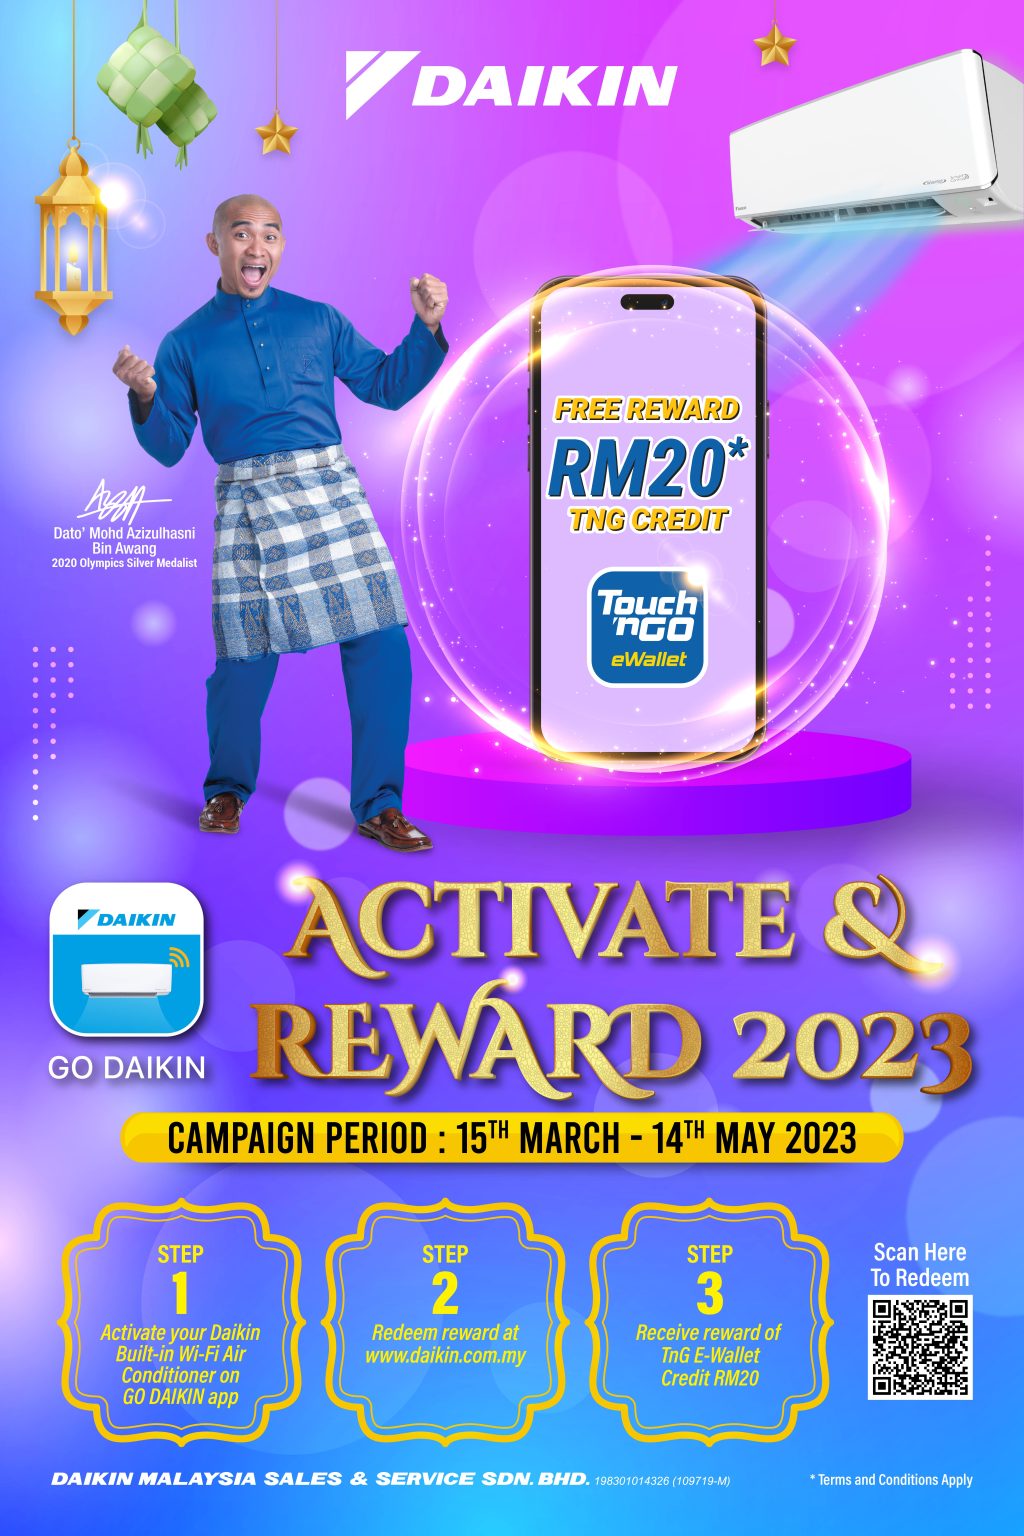 go-daikin-activate-reward-2023-daikin-malaysia